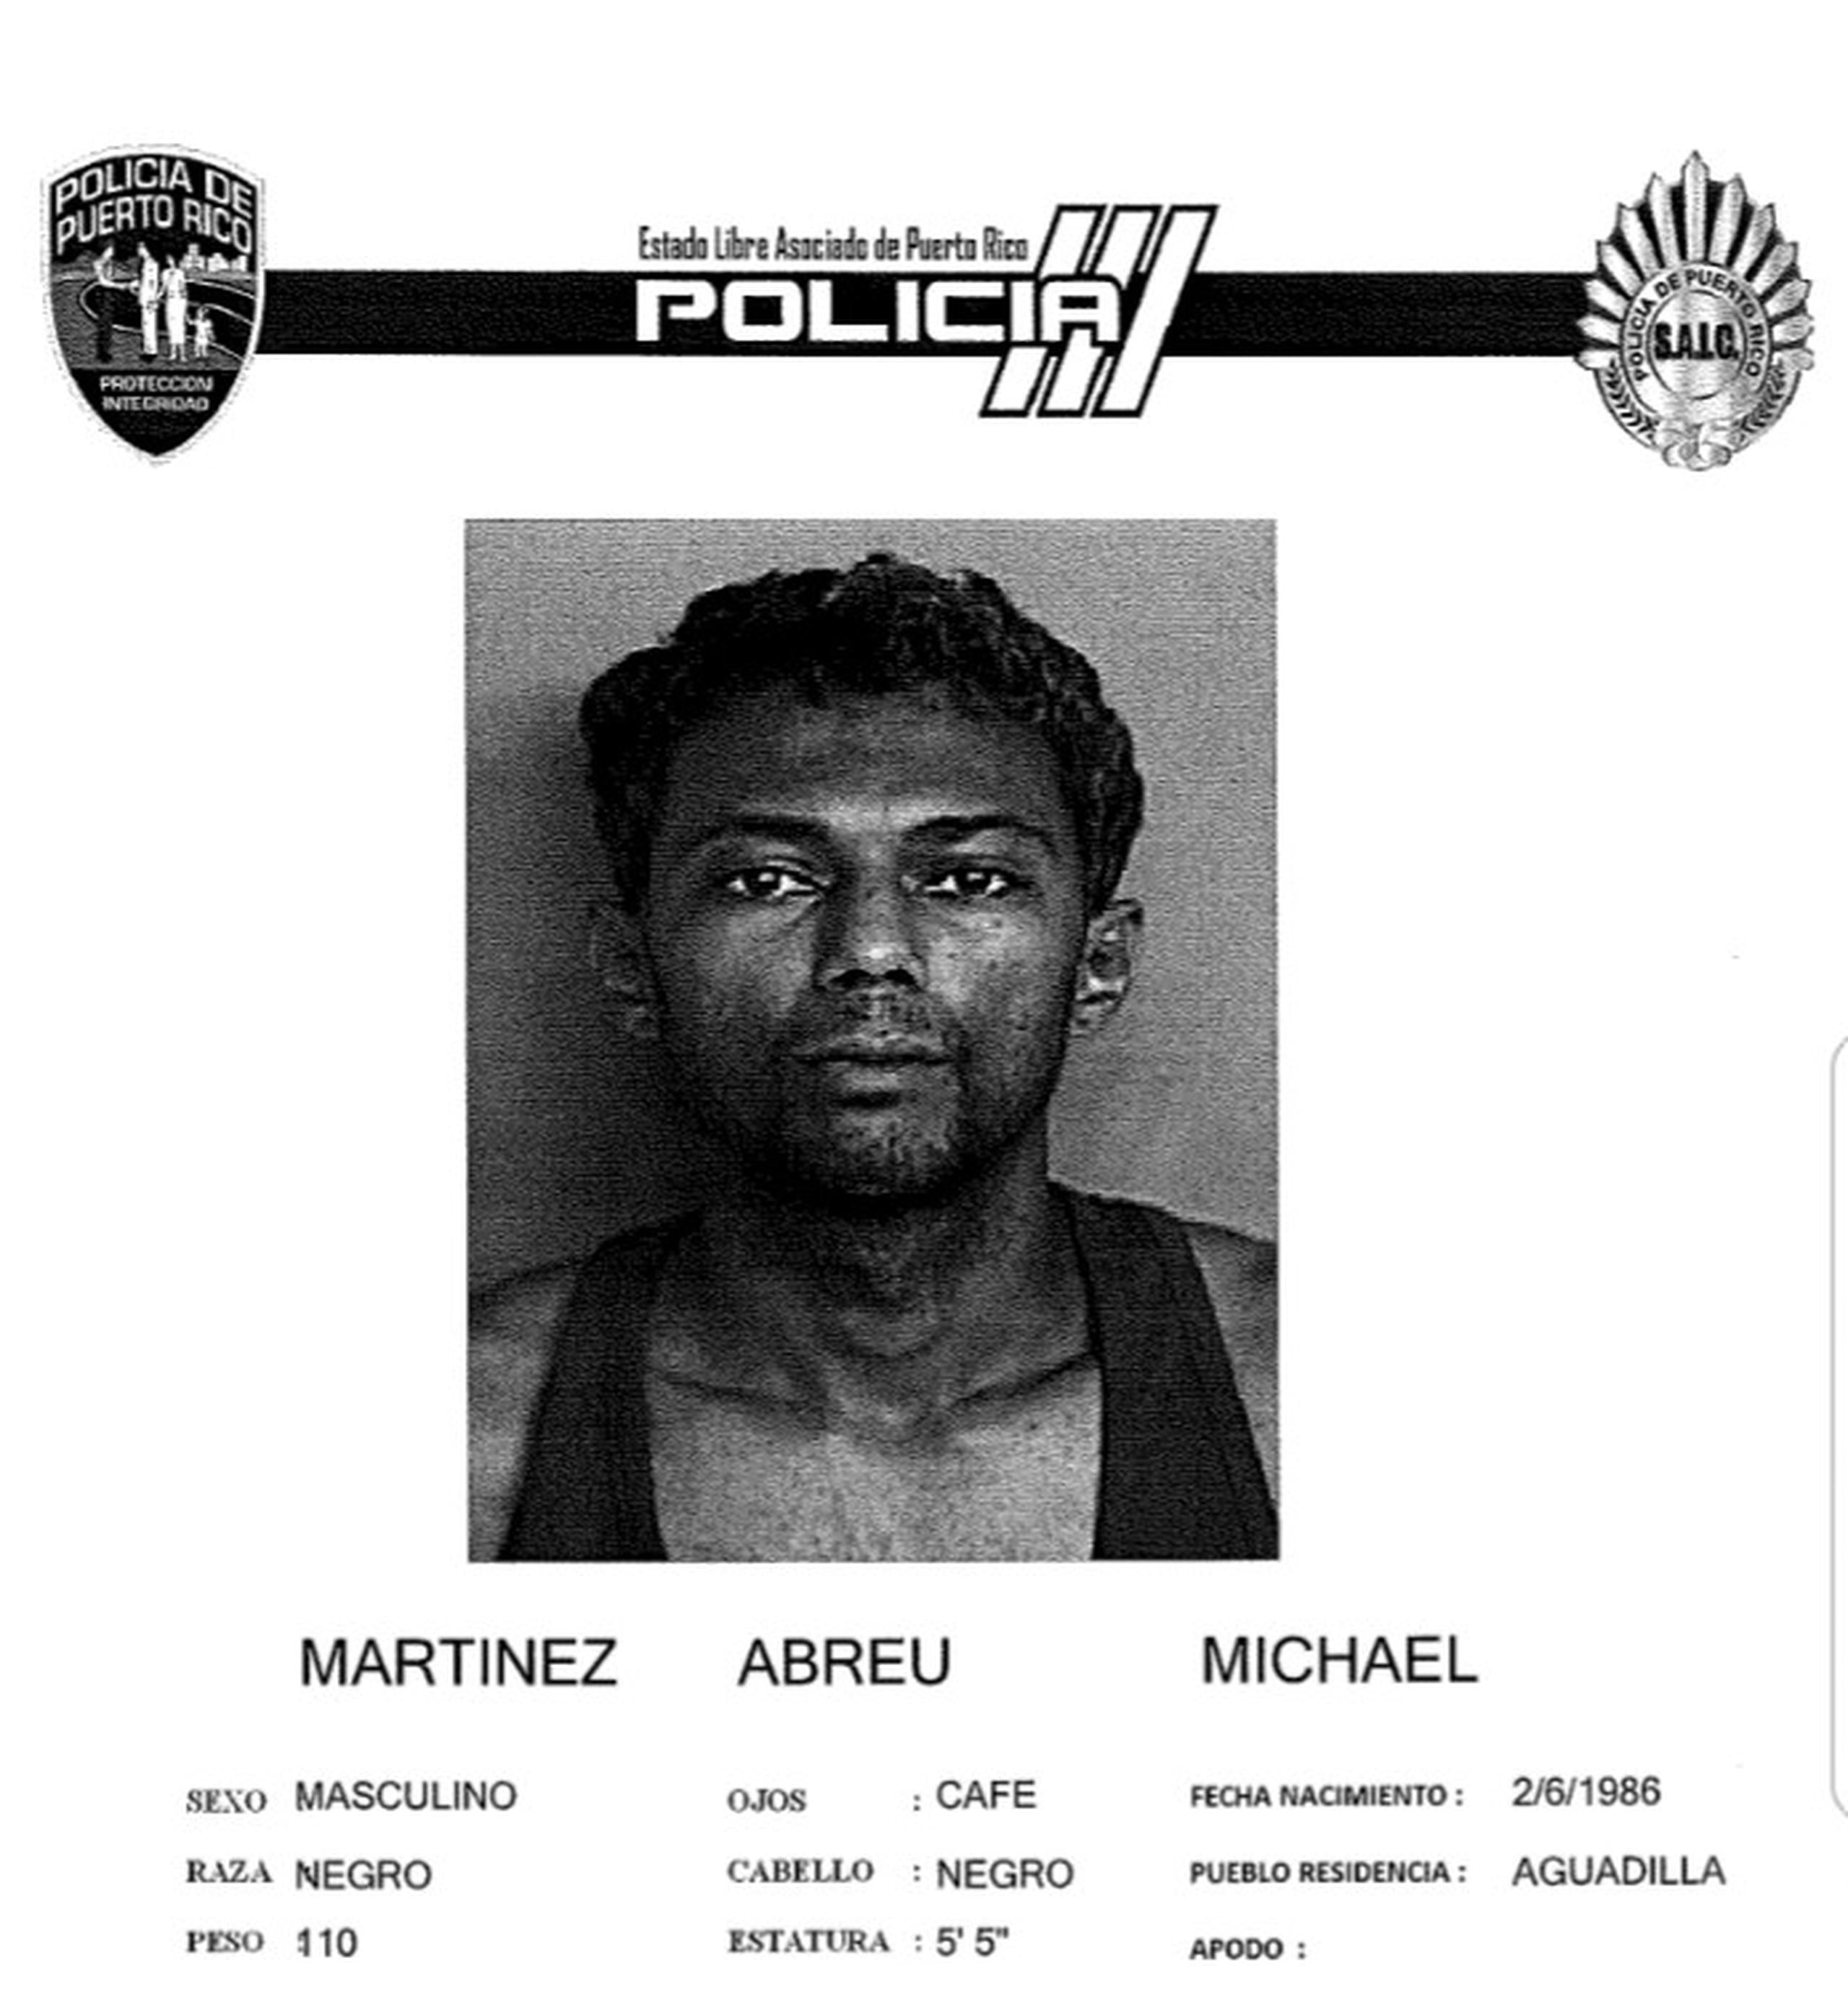 Michael Martínez Abreu de 36 años, enfrenta cargos por maltrato y amenaza de muerte contra su padre de 67 años.